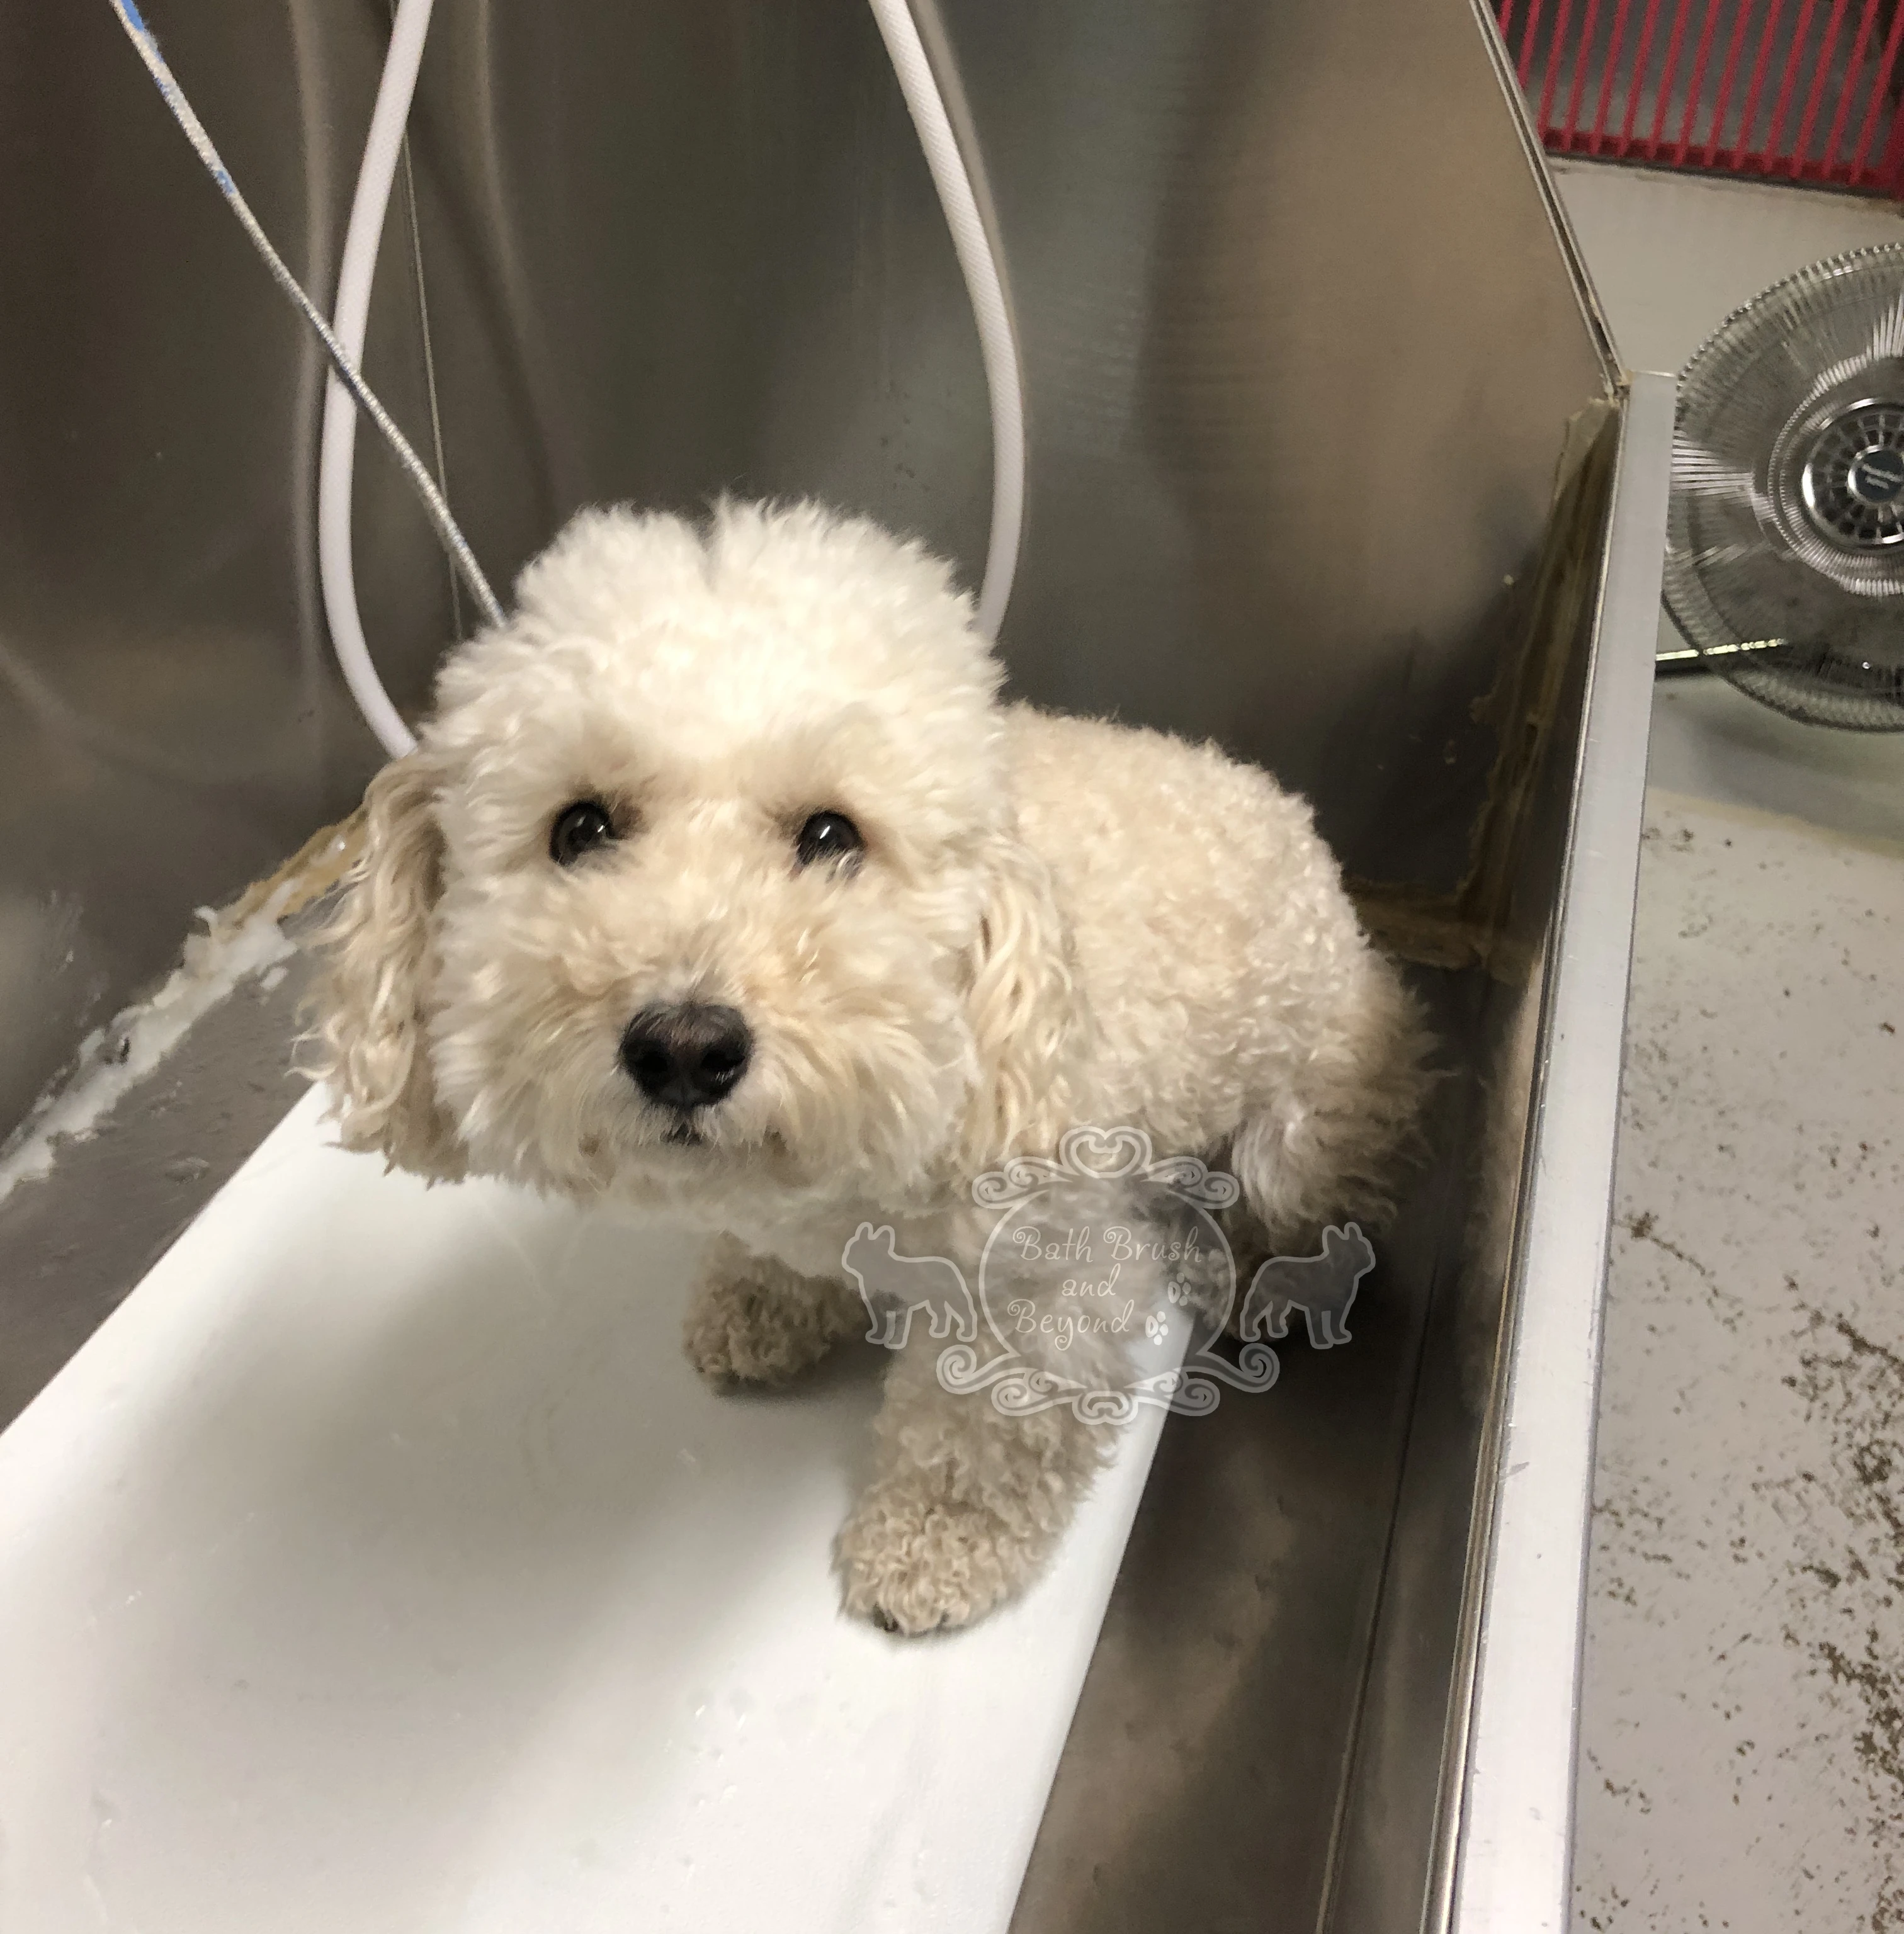 White fluffy dog in bath